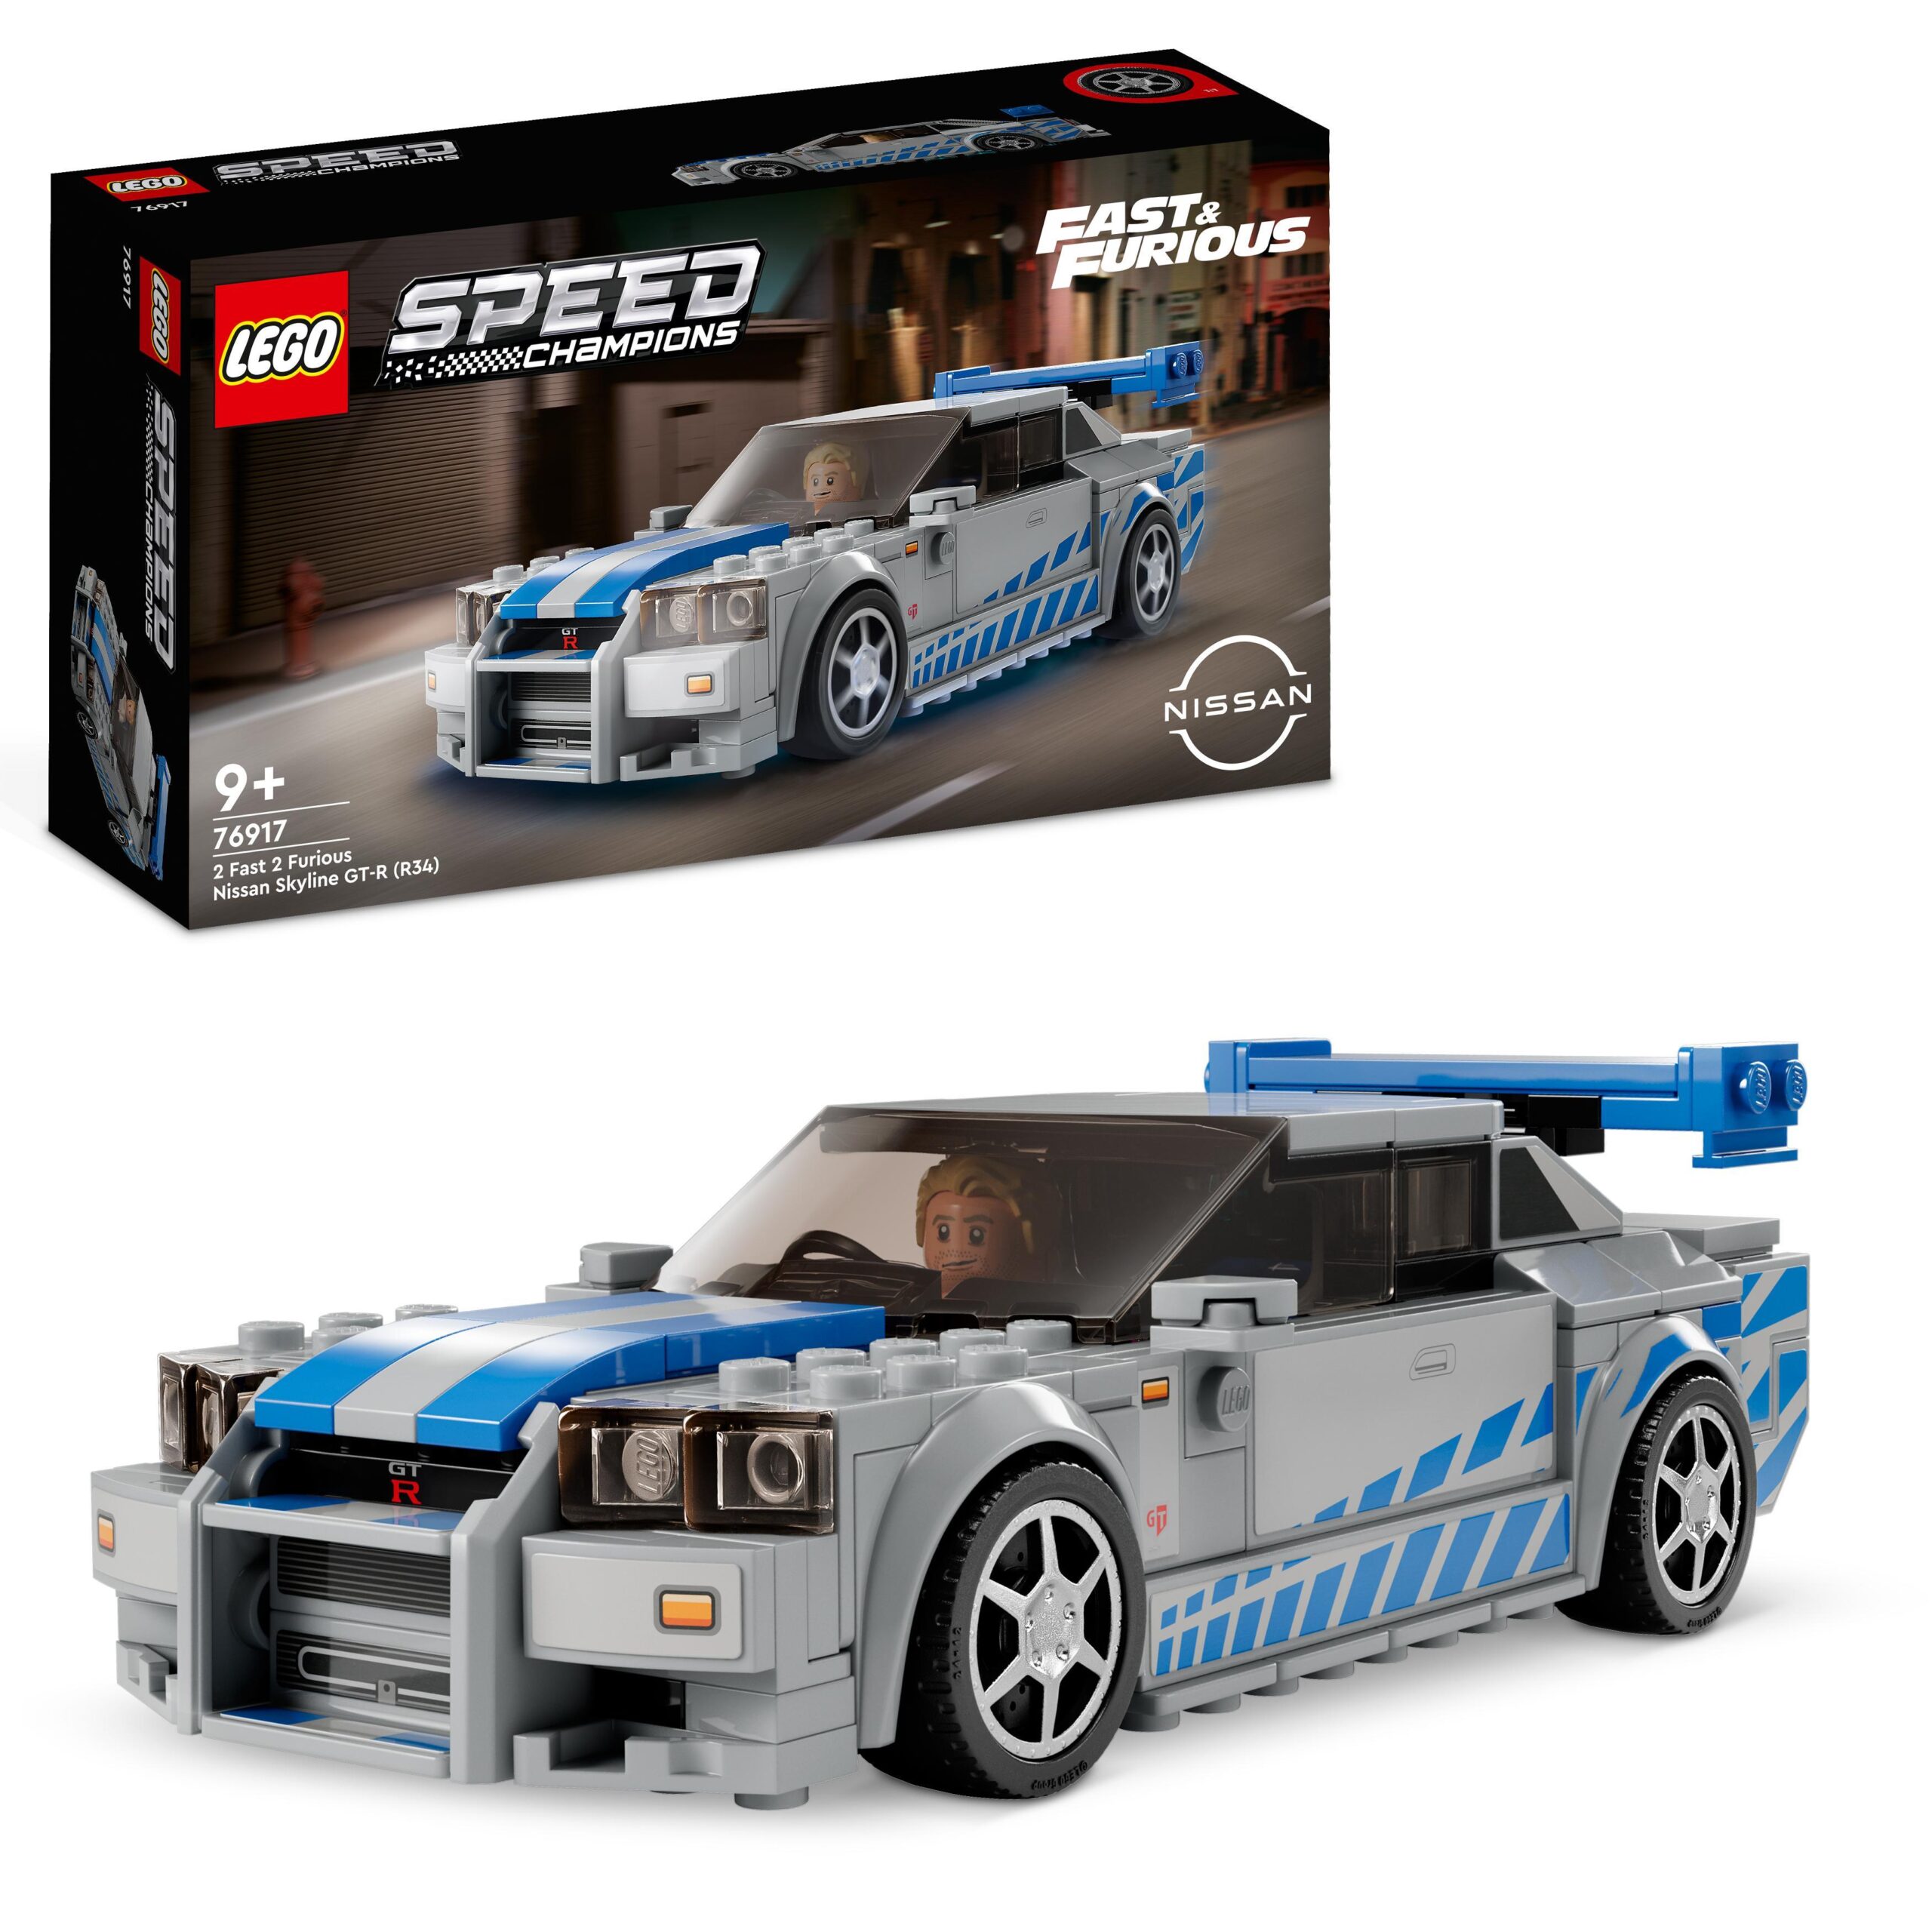 Lego speed champions 76917 2 fast 2 furious nissan skyline gt-r (r34) macchina giocattolo da collezione 2023, giochi per bambini - LEGO SPEED CHAMPIONS